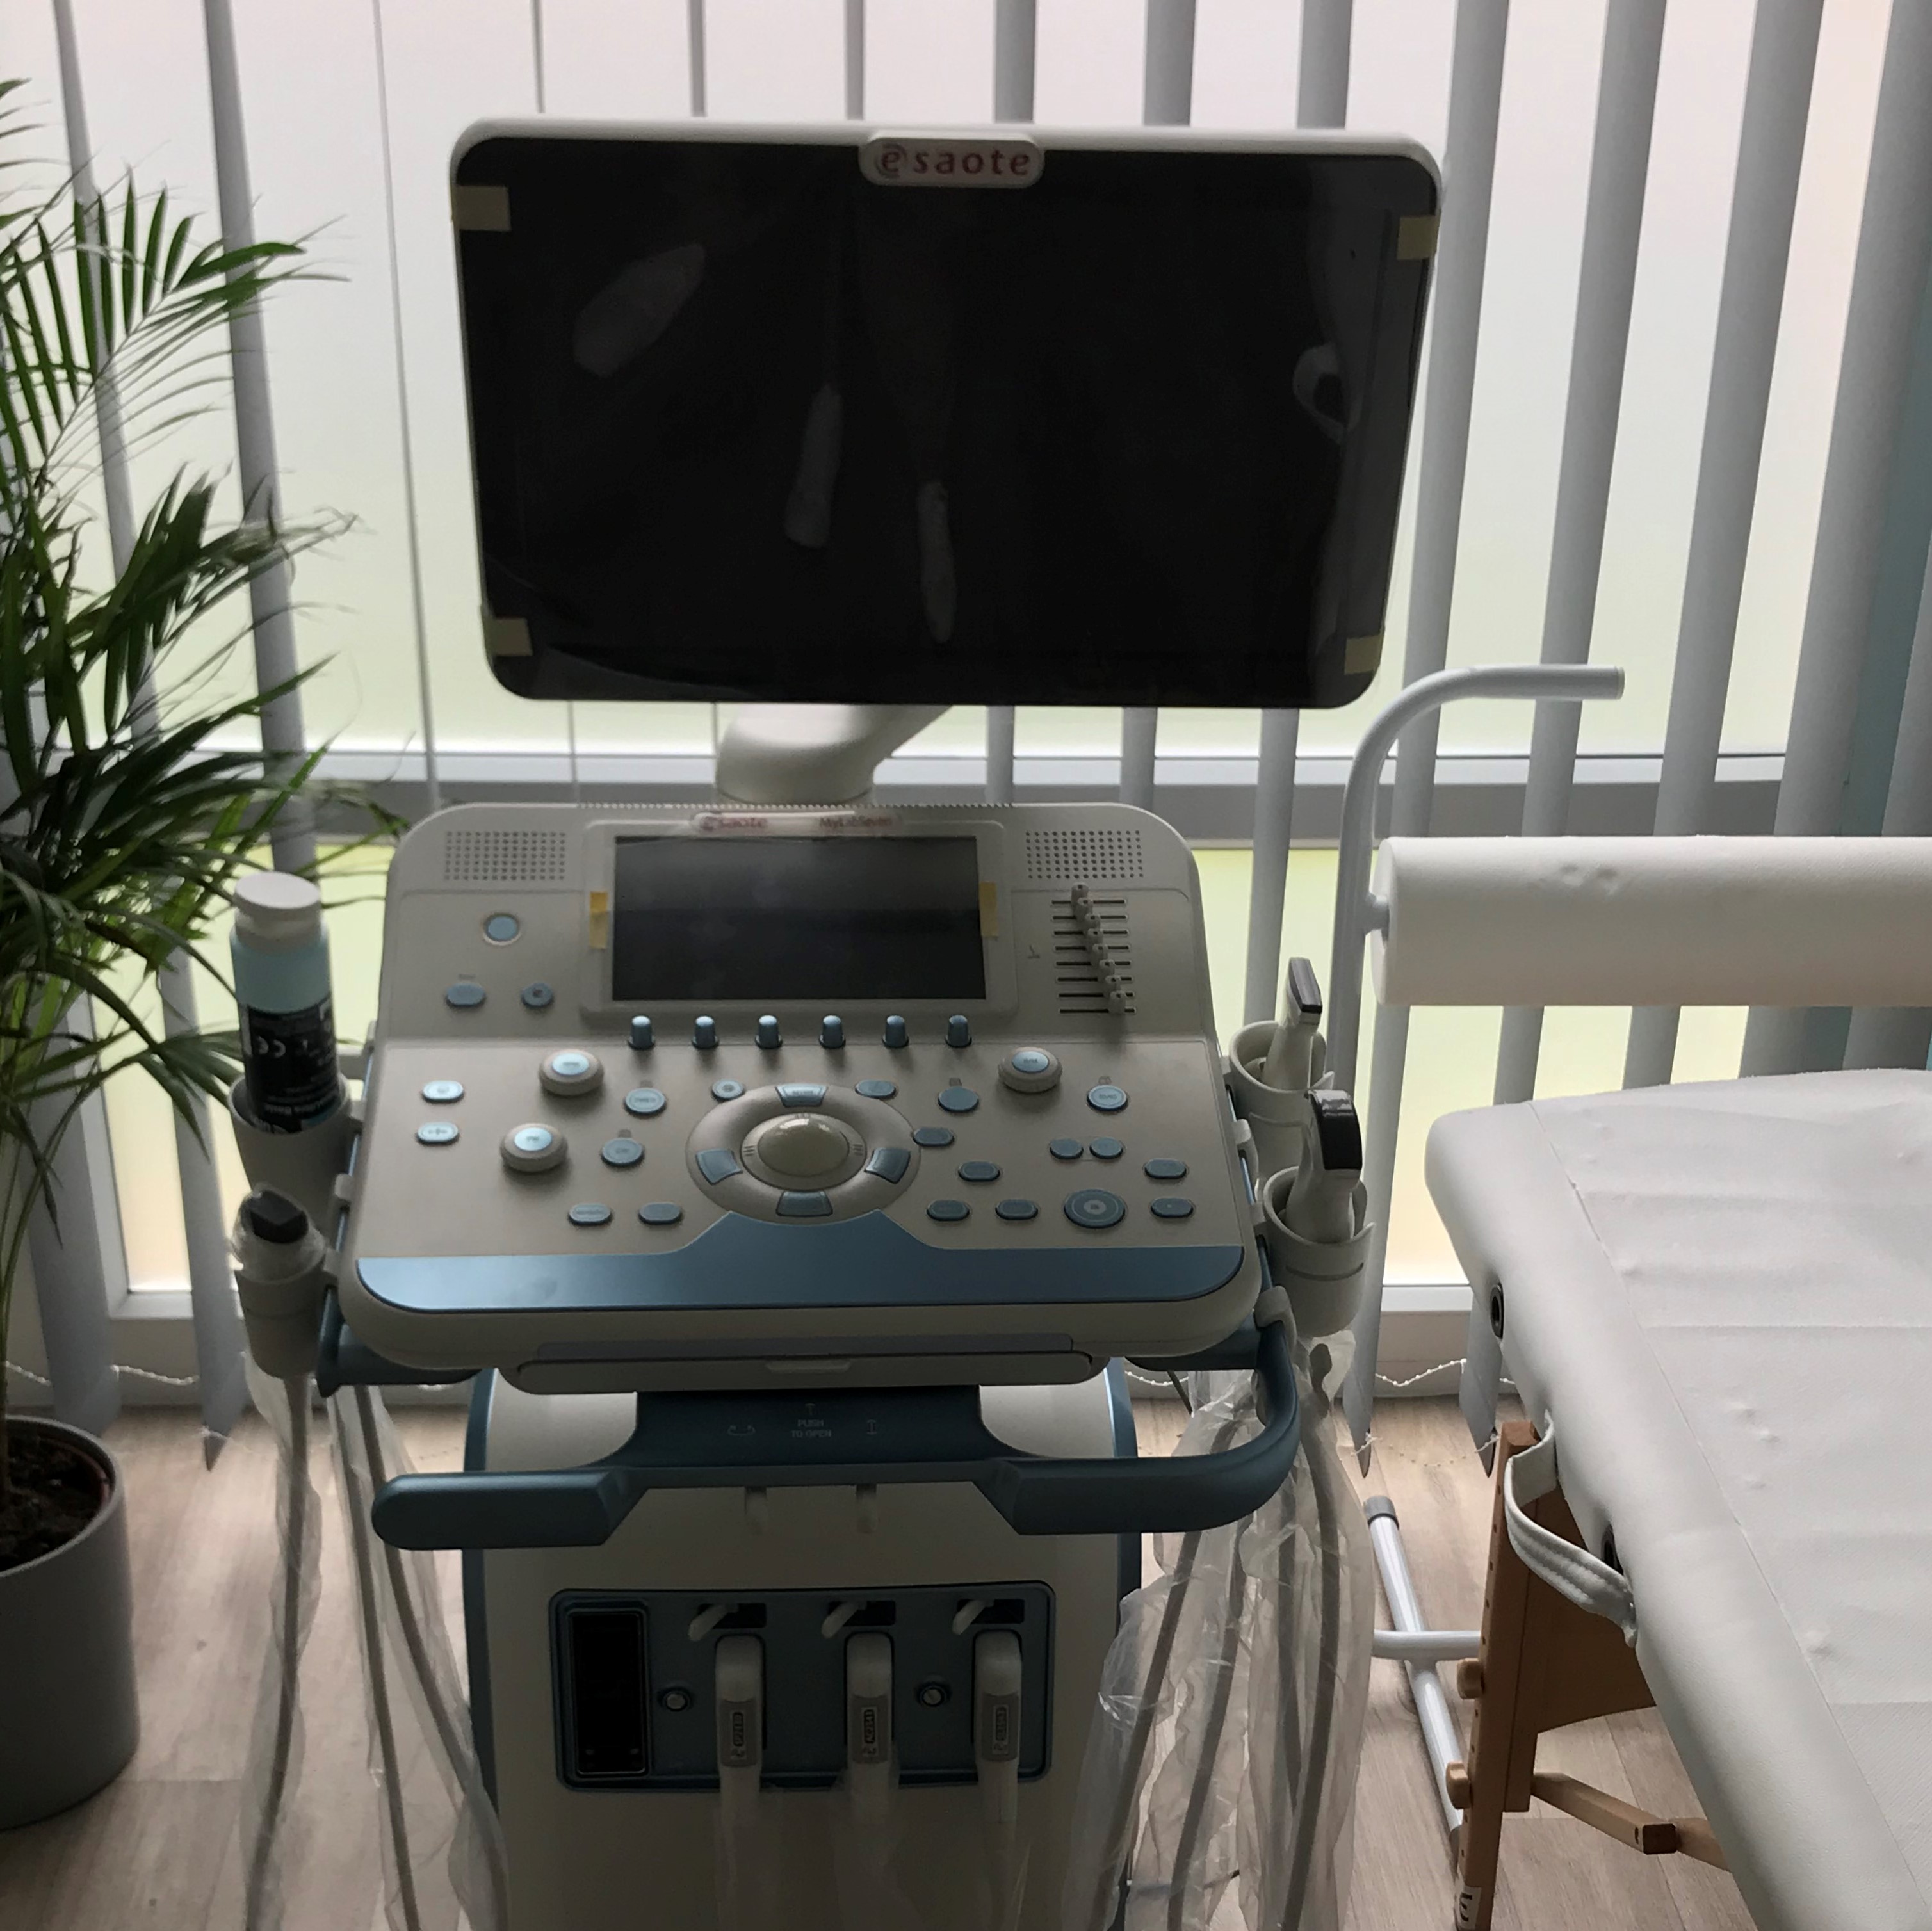 Sztrók-trombozis megelőző szűrőcsomag: Nyaki Doppler ultrahang, és 1 alsó végtag Doppler ultrahang vizsgálata, lelettel, konzultációval az Ultrahang Magyarországnál